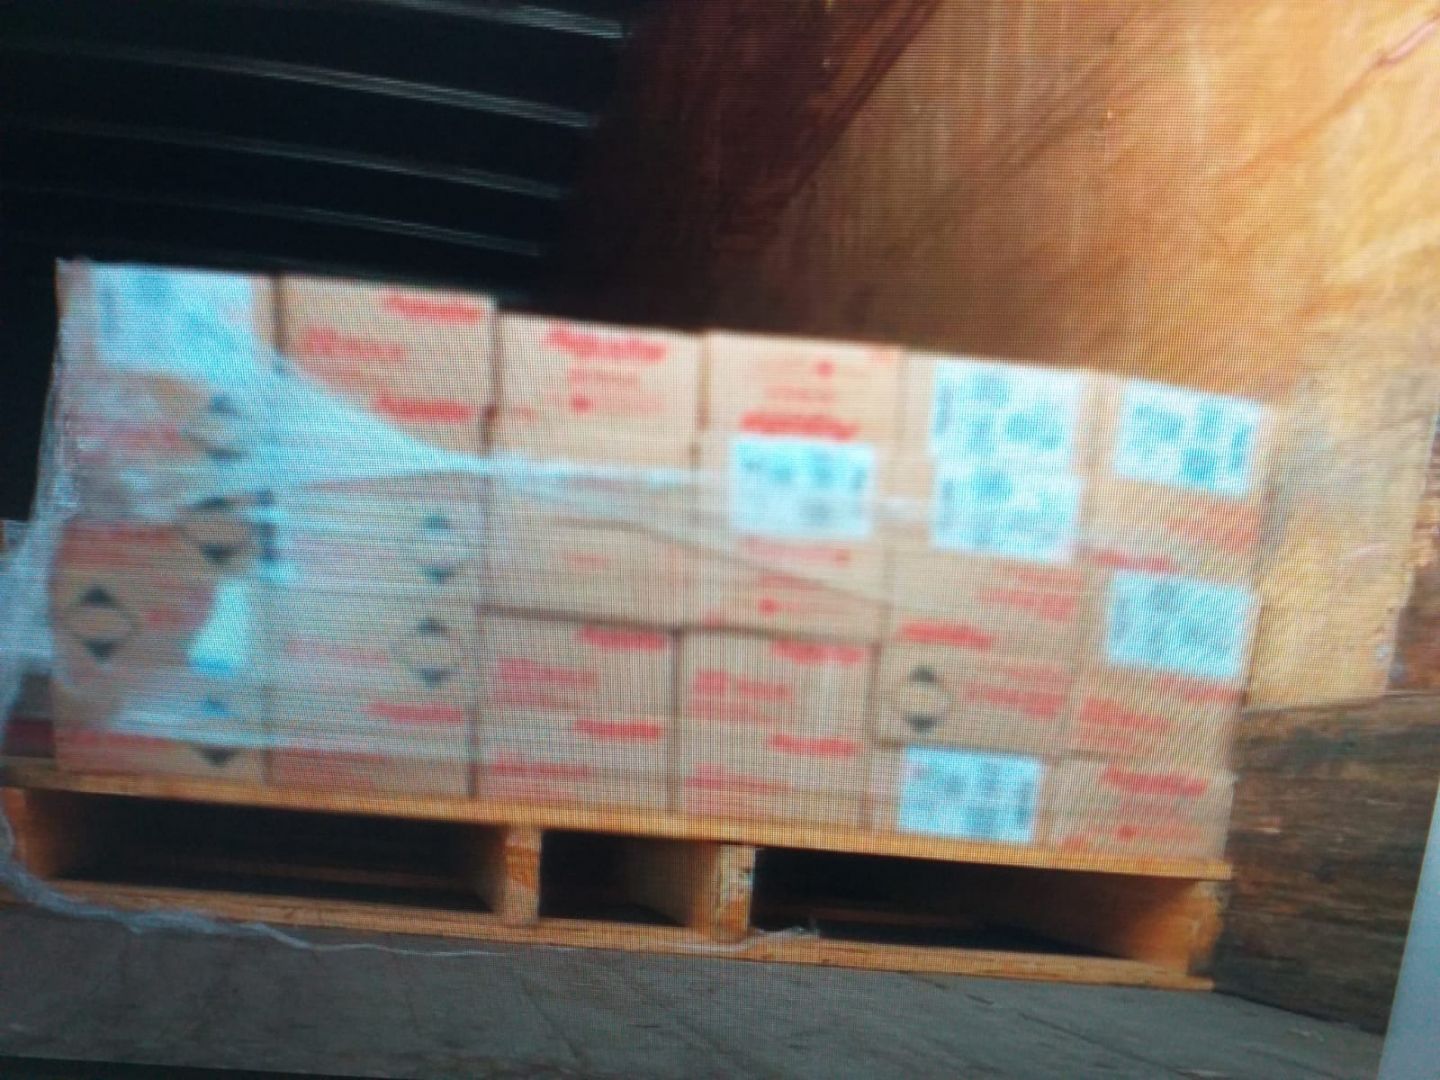 #GN recuperó 7 millones 114 mil 500 cartuchos robados en Guanajuato
